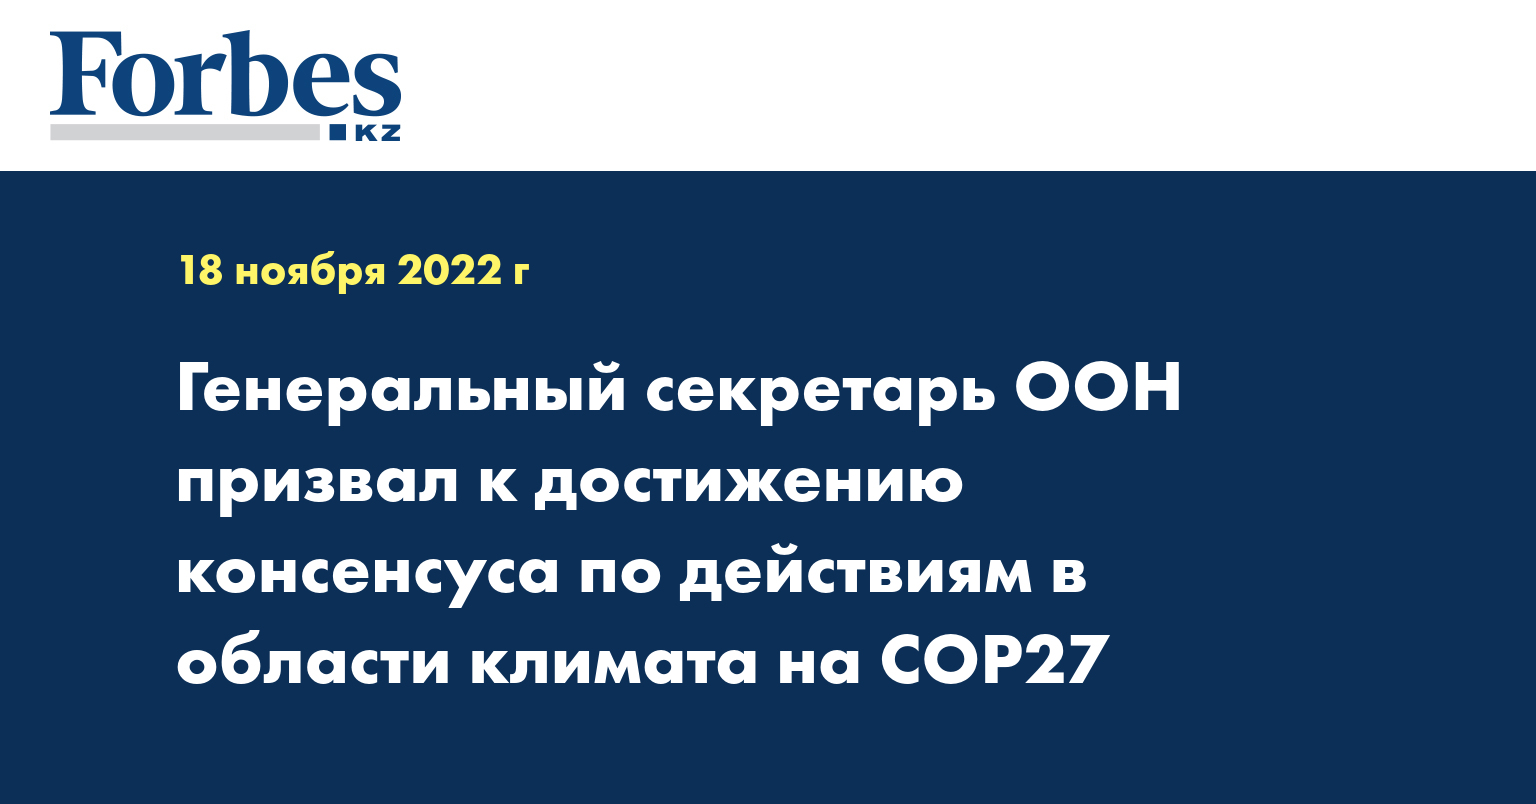 Генеральный секретарь ООН призвал к достижению консенсуса по действиям в области климата на COP27